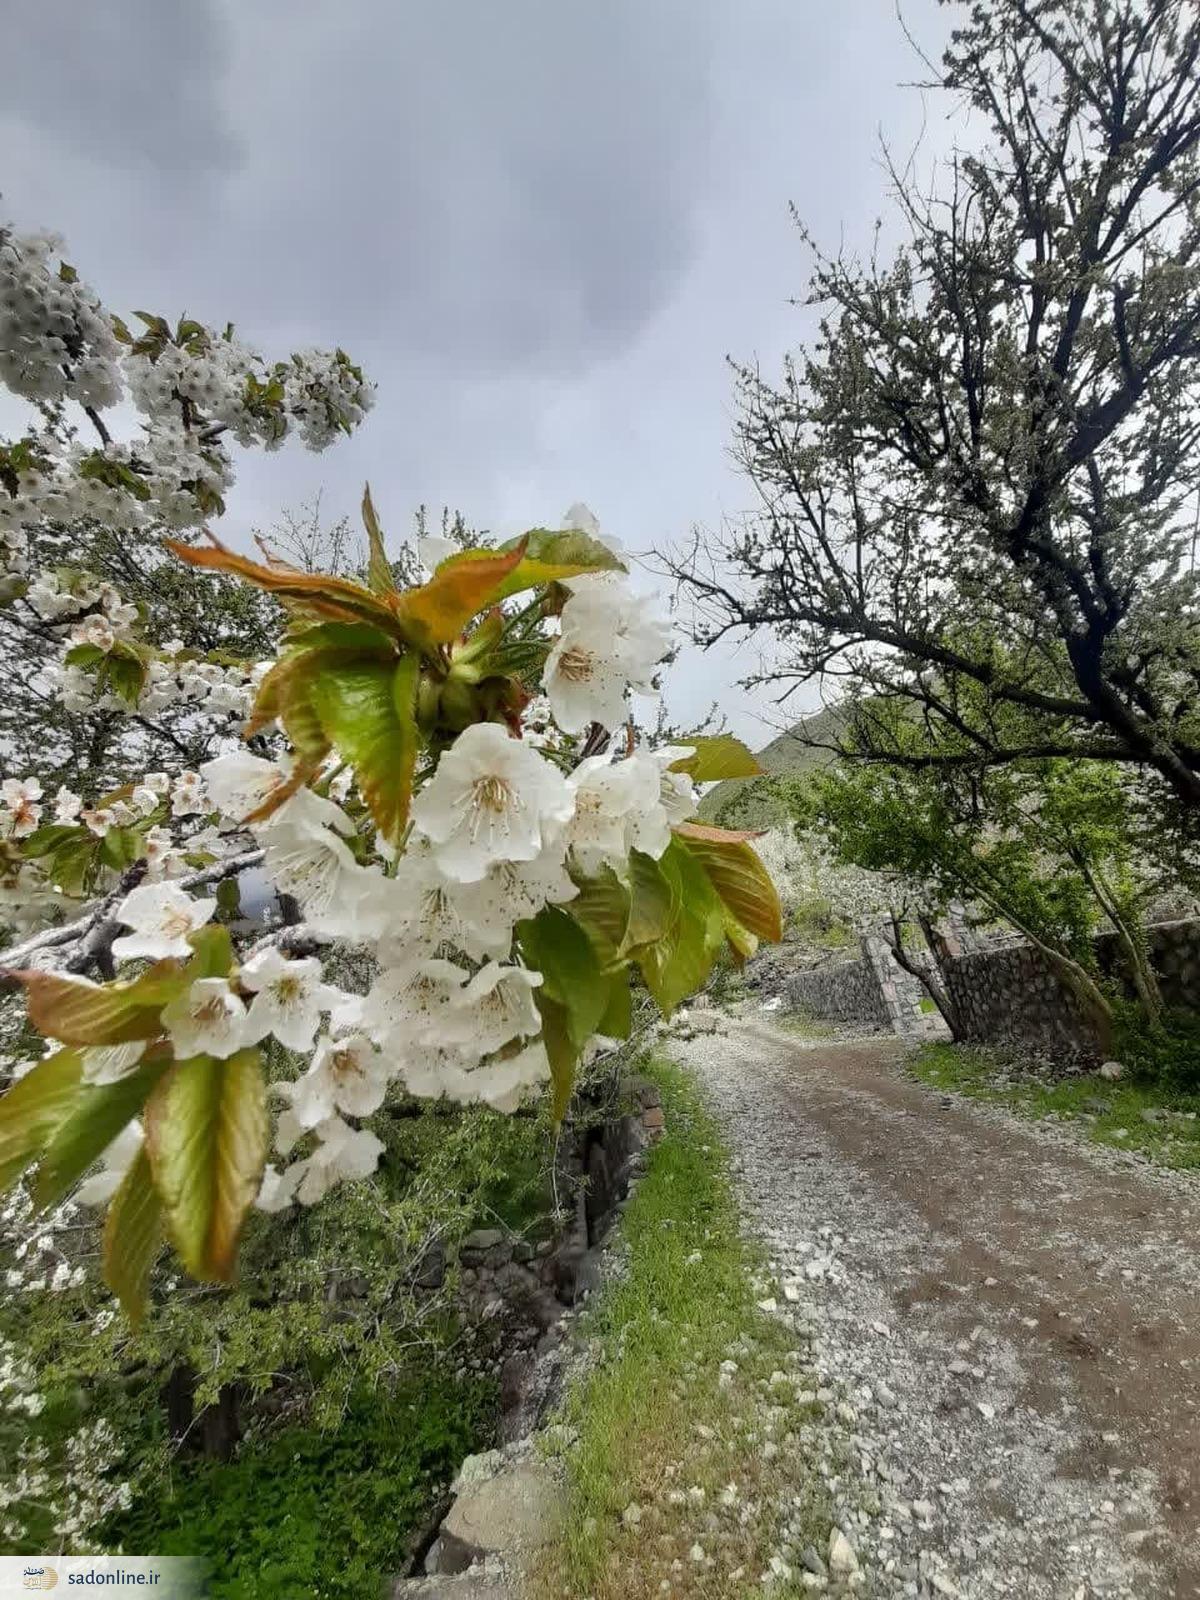 ویدیو / شکوفه های بهاری در مسیر پیاده روی دشت هویچ